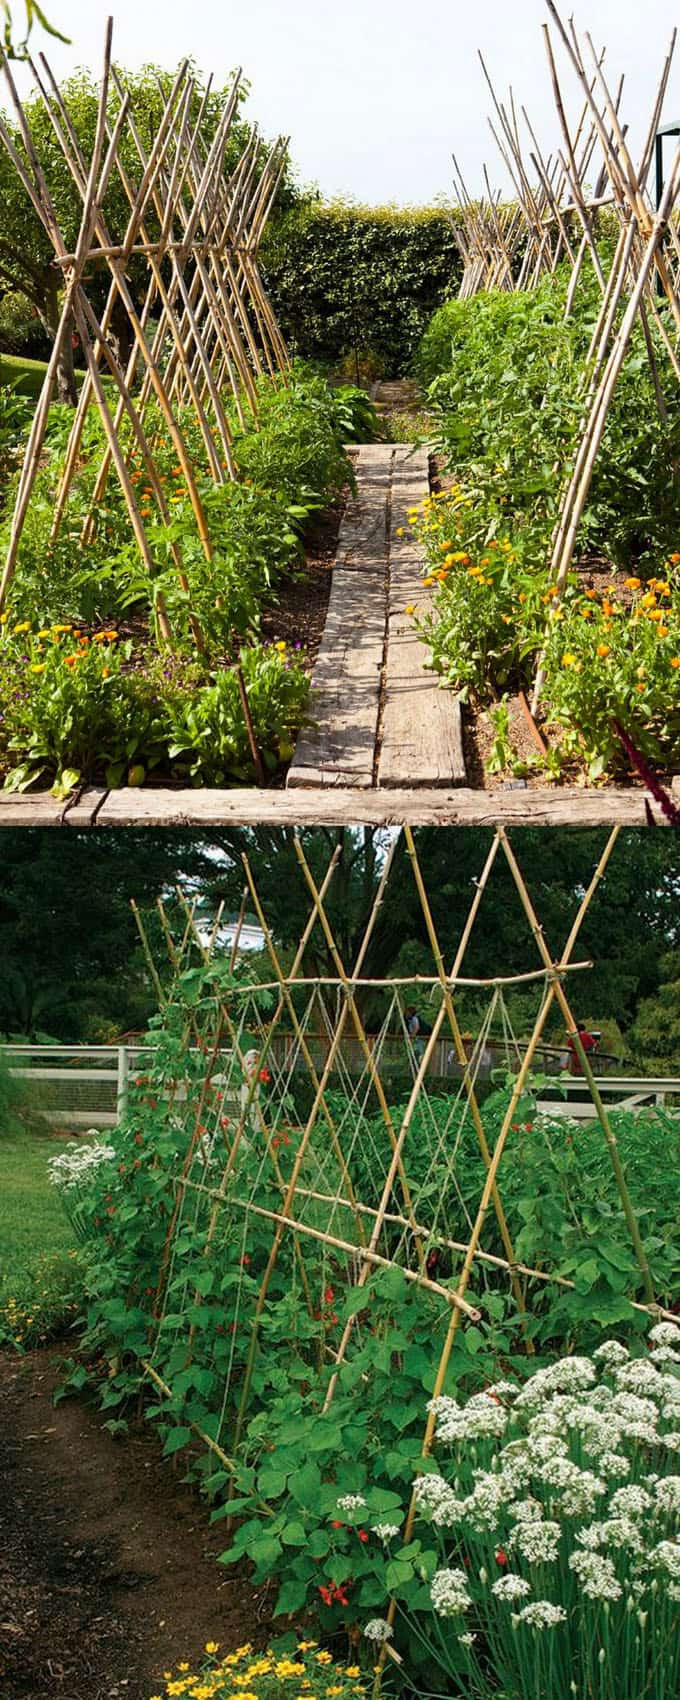 Best ideas about DIY Garden Trellis
. Save or Pin 21 Easy DIY Garden Trellis Ideas & Vertical Growing Now.